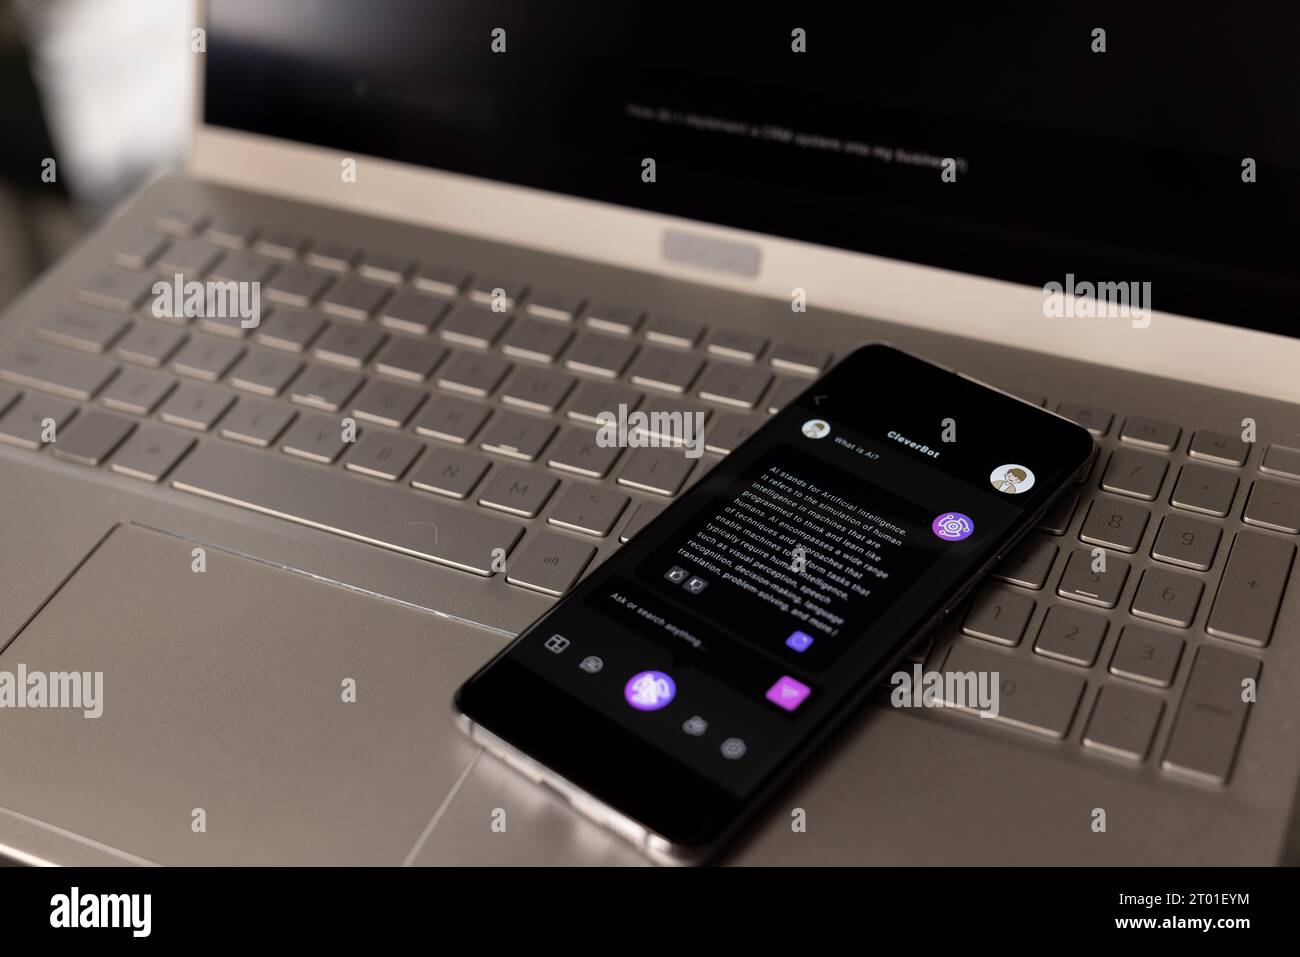 Smartphone mit Webchat auf dem Bildschirm, das im Home Office auf der Laptop-Tastatur liegt Stockfoto